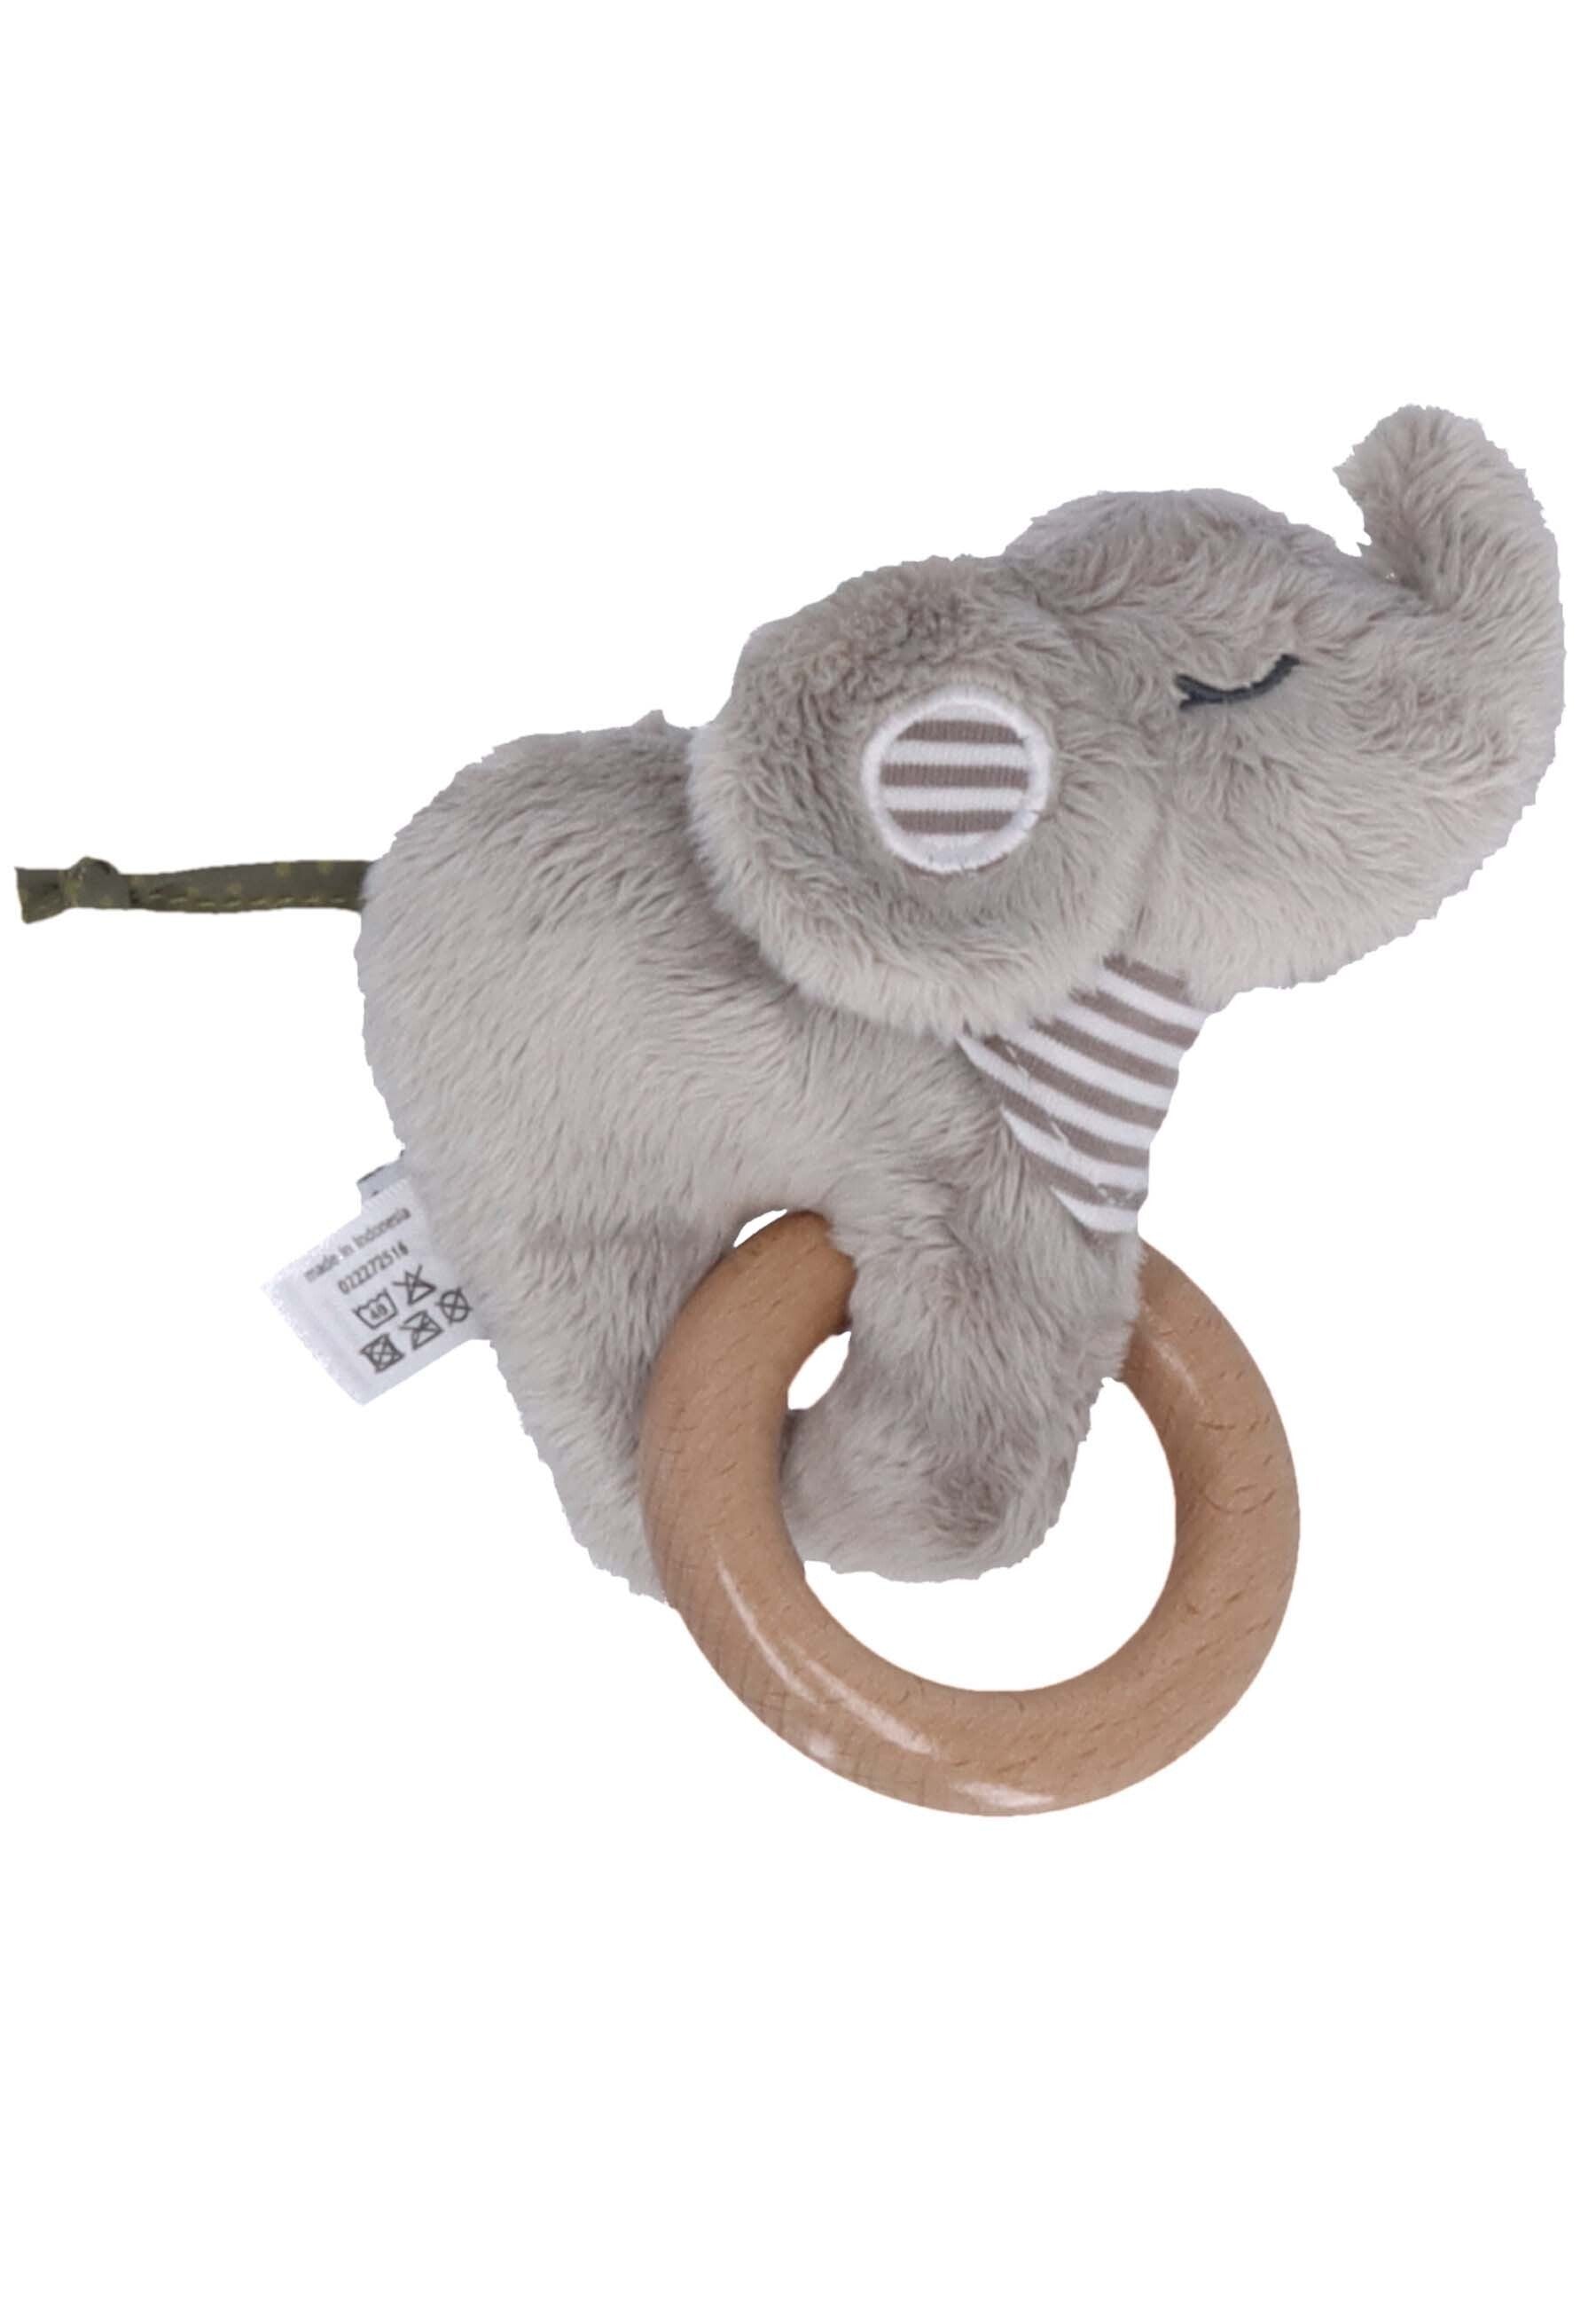 Spielfigur mit Holz Greifring Elefant Grau ⭐️ Eddy